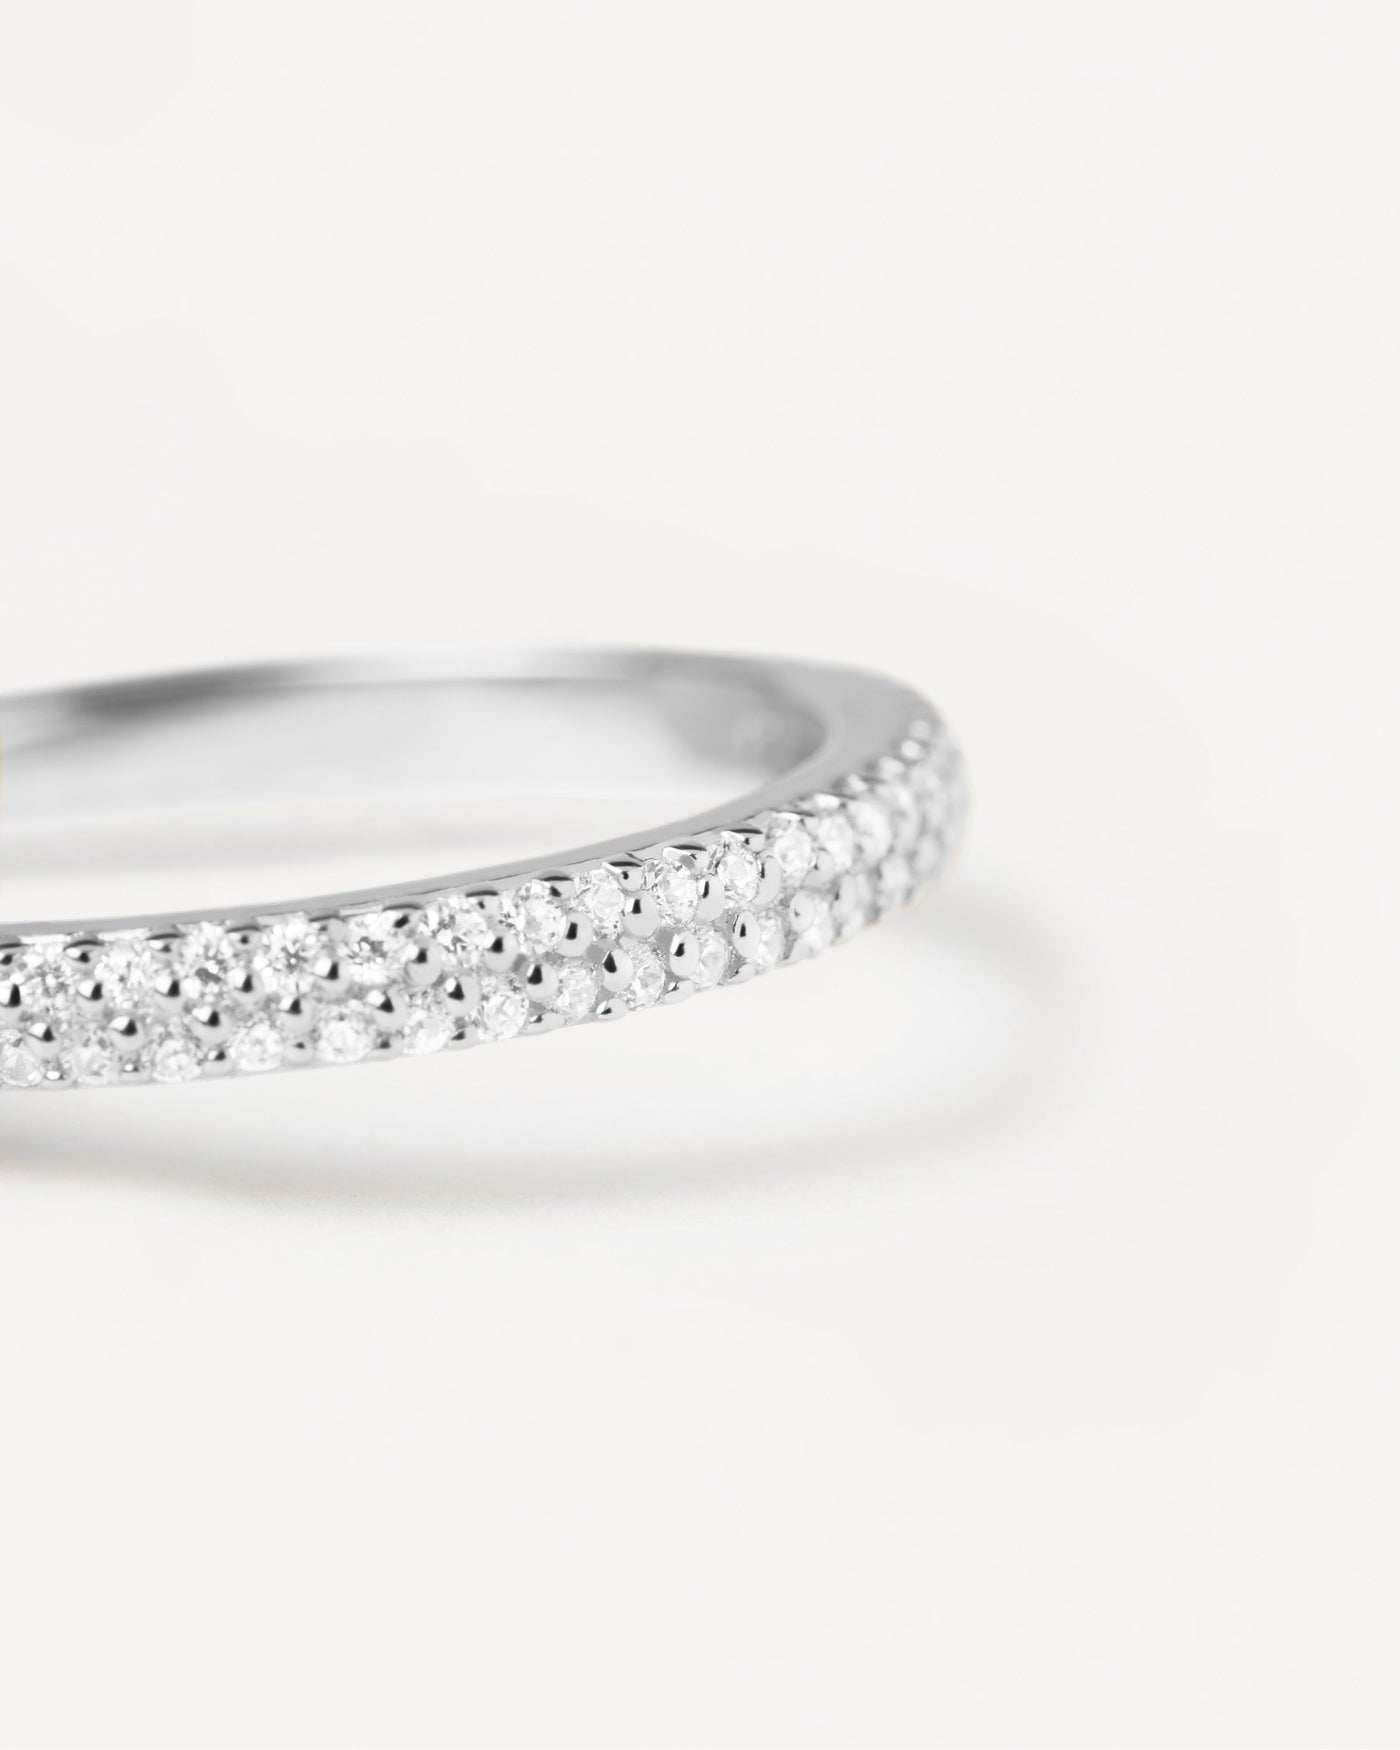 Tiara Silberring. Ring aus Sterlingsilber mit weißen Zirkonias. Erhalten Sie die neuesten Produkte von PDPAOLA. Geben Sie Ihre Bestellung sicher auf und erhalten Sie diesen Bestseller.